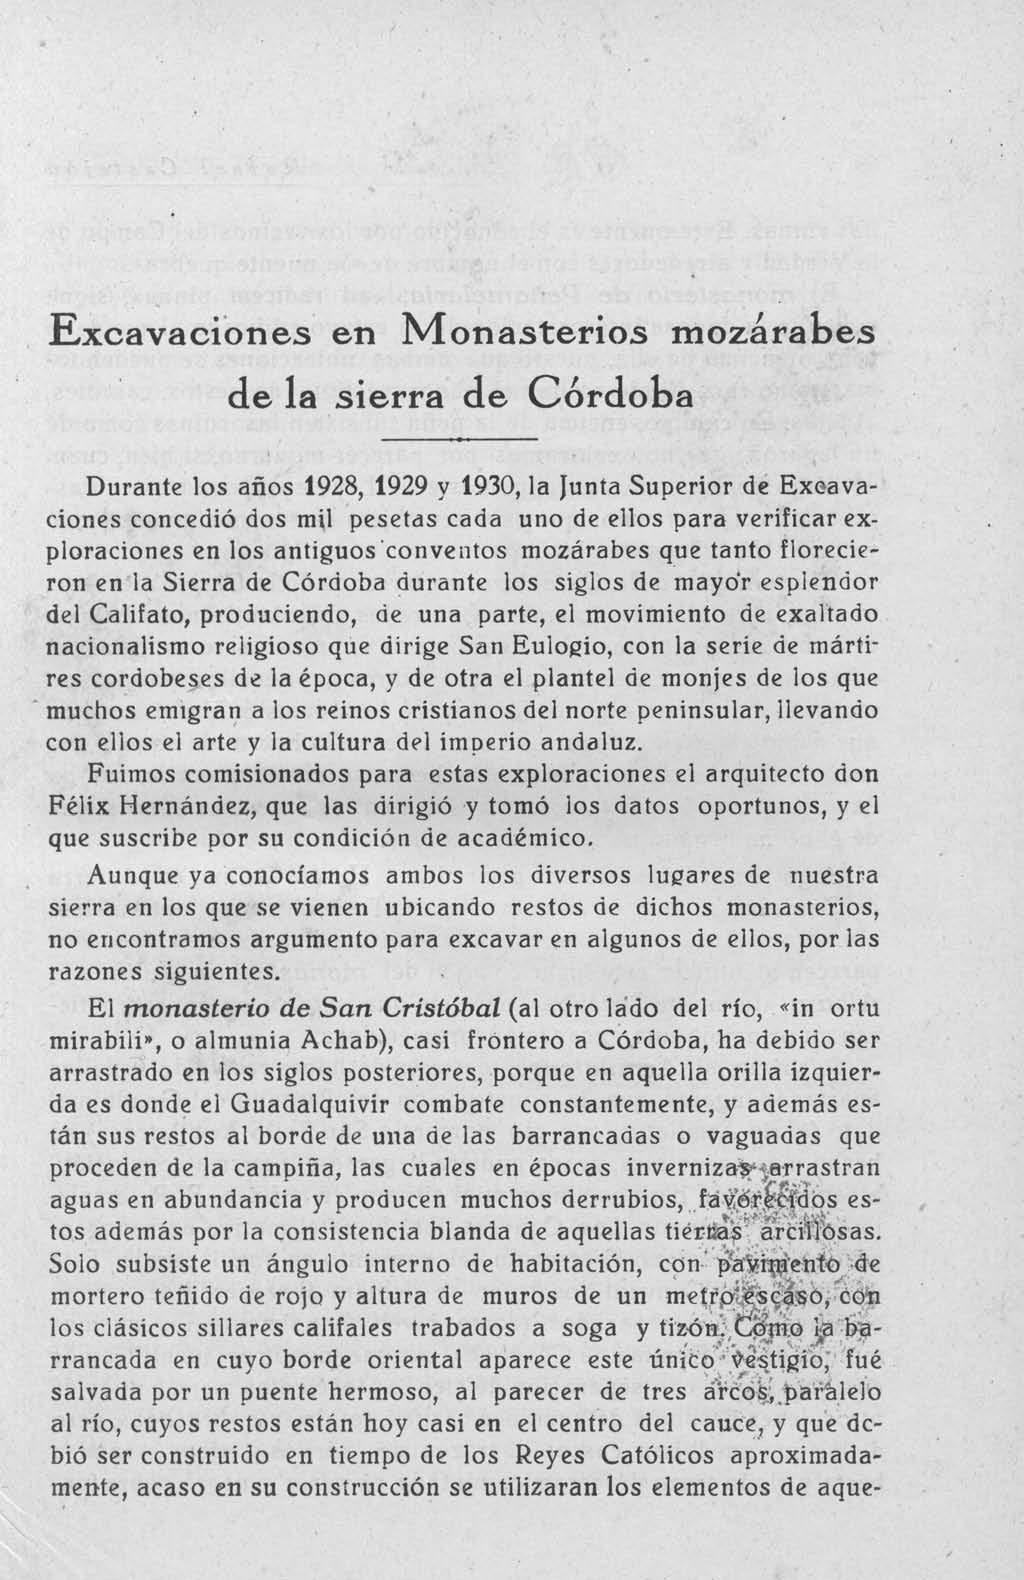 Excavaciones en Monasterios mozárabes de la sierra de Córdoba Durante los años 1928, 1929 y 1930, la Junta Superior de Excavaciones concedió dos mil pesetas cada uno de ellos para verificar